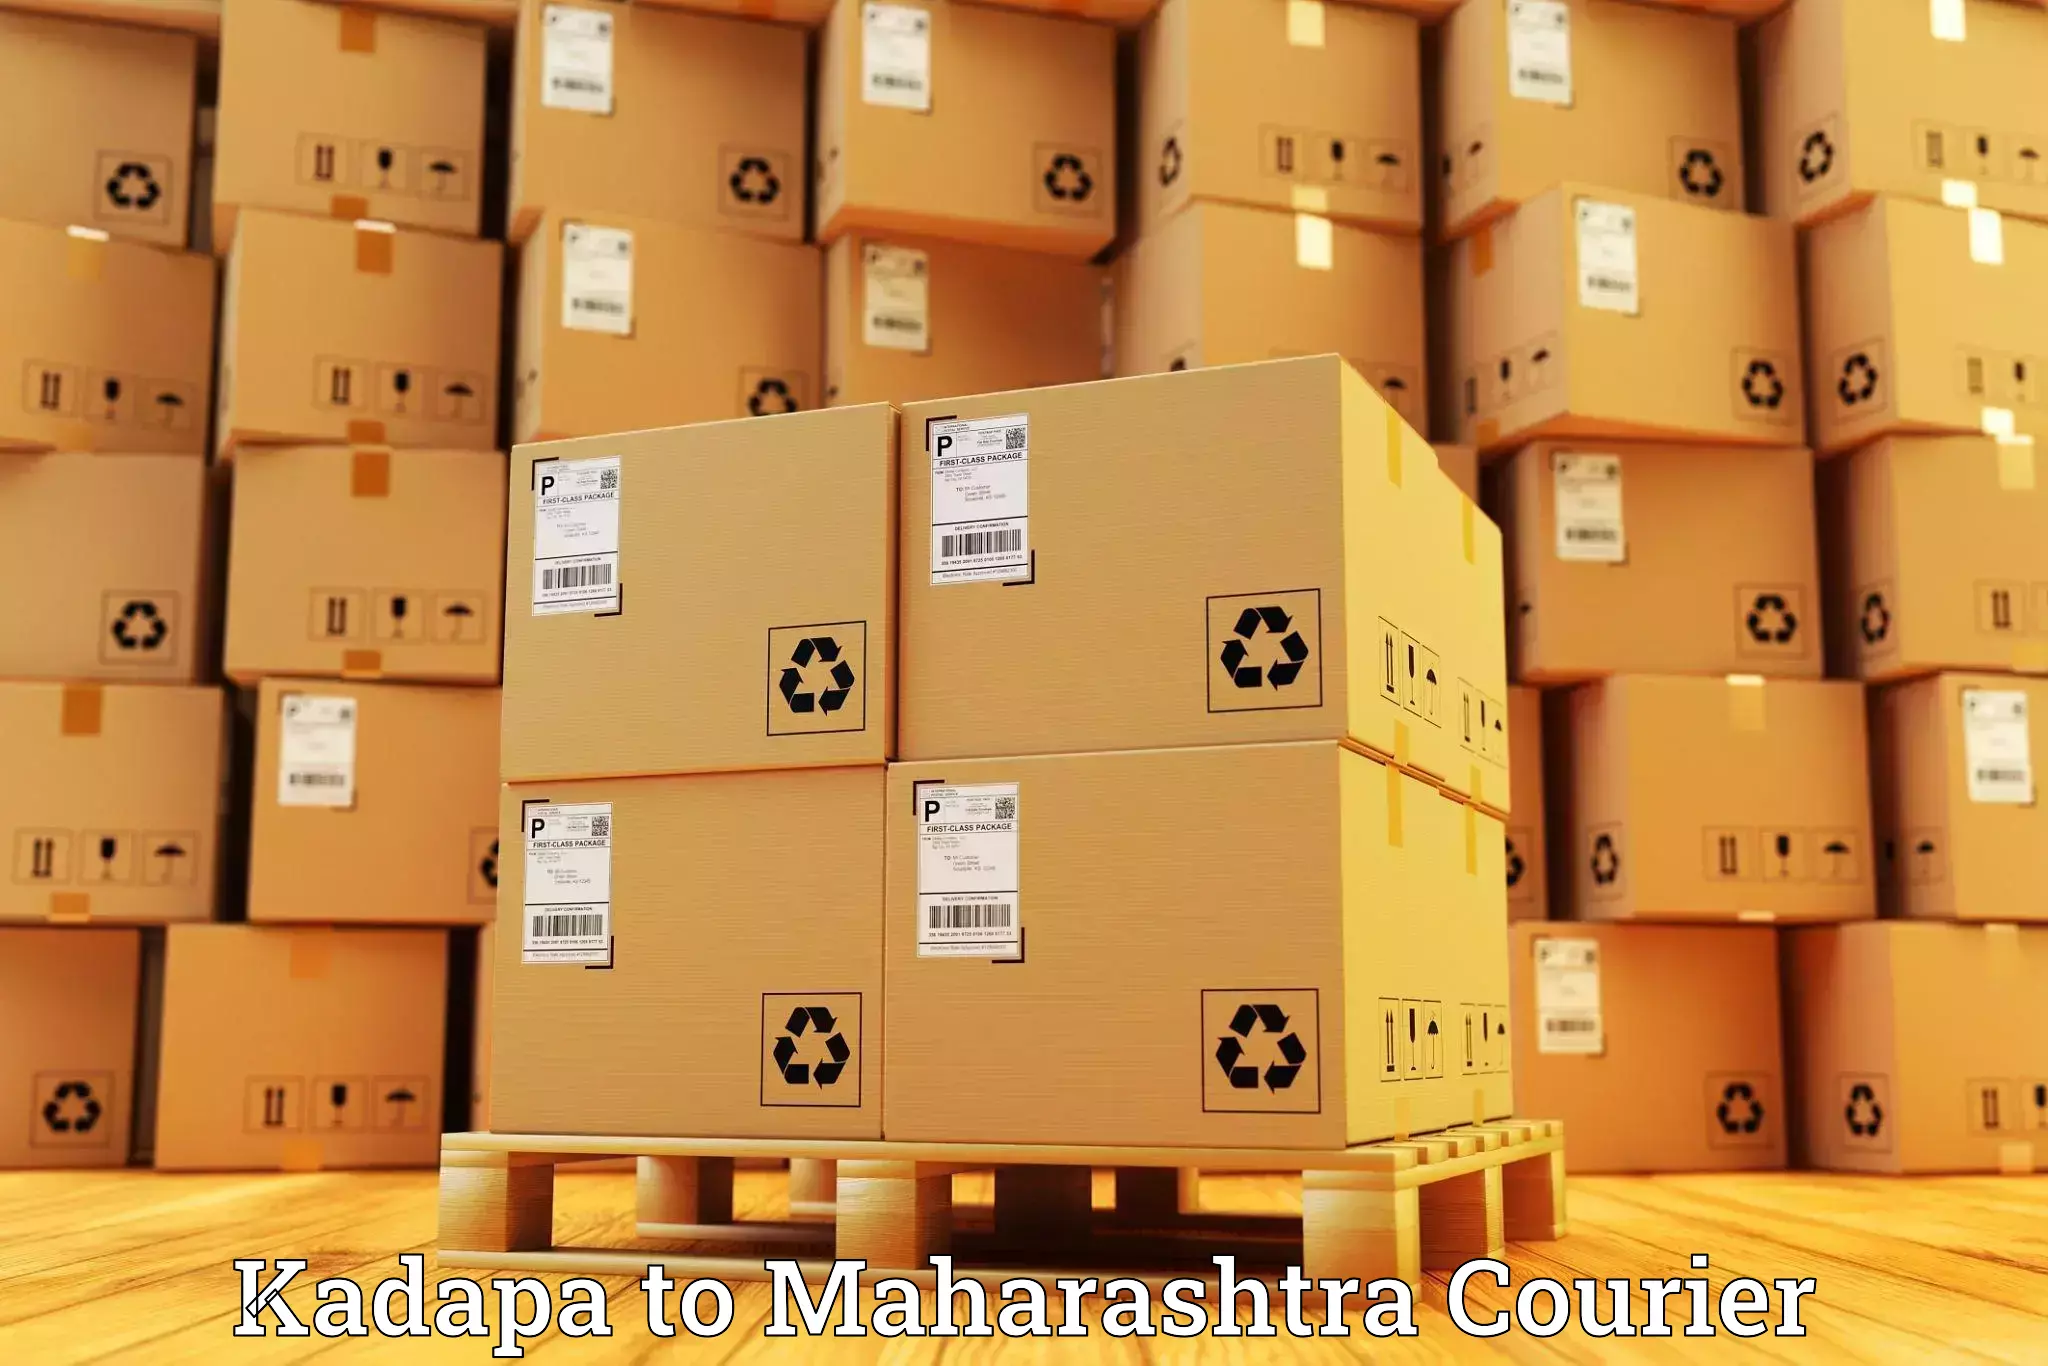 Nationwide delivery network Kadapa to Kurkheda